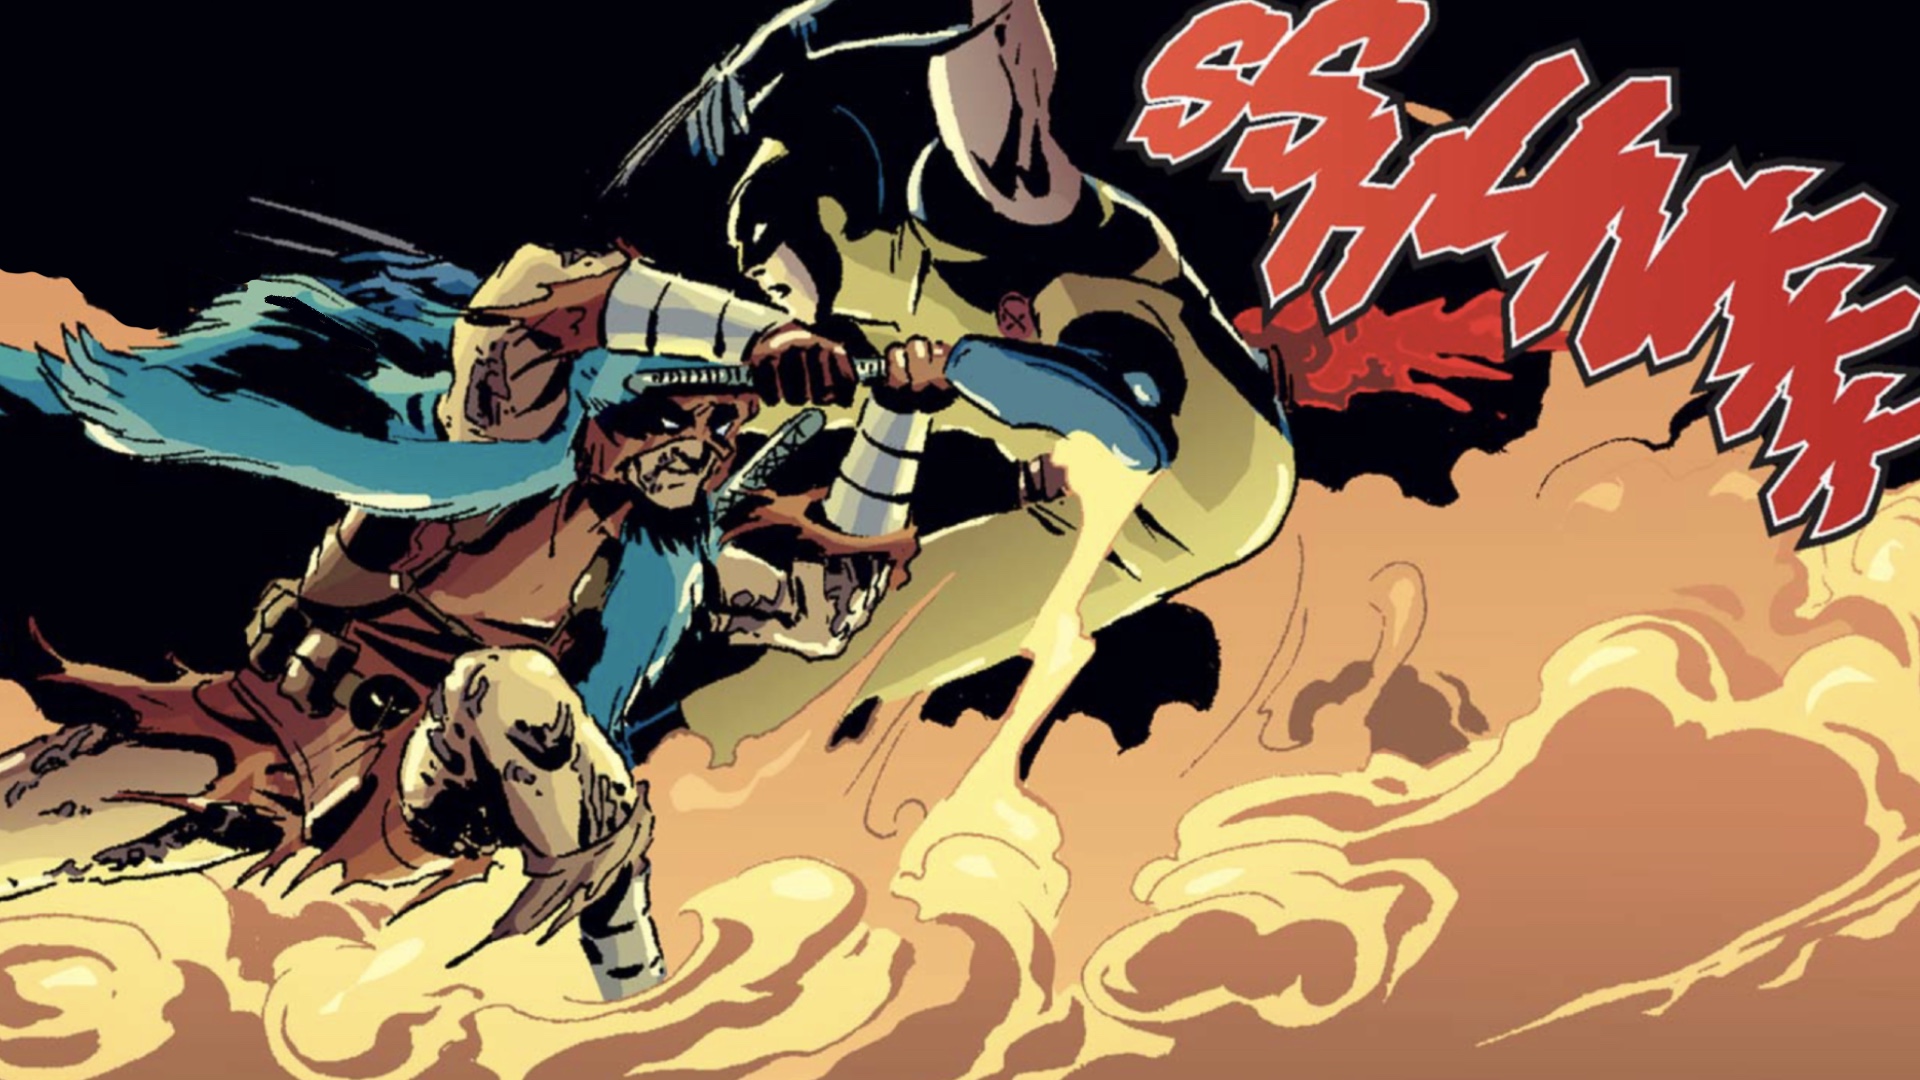 Deadpool Kills the Marvel Universe panel